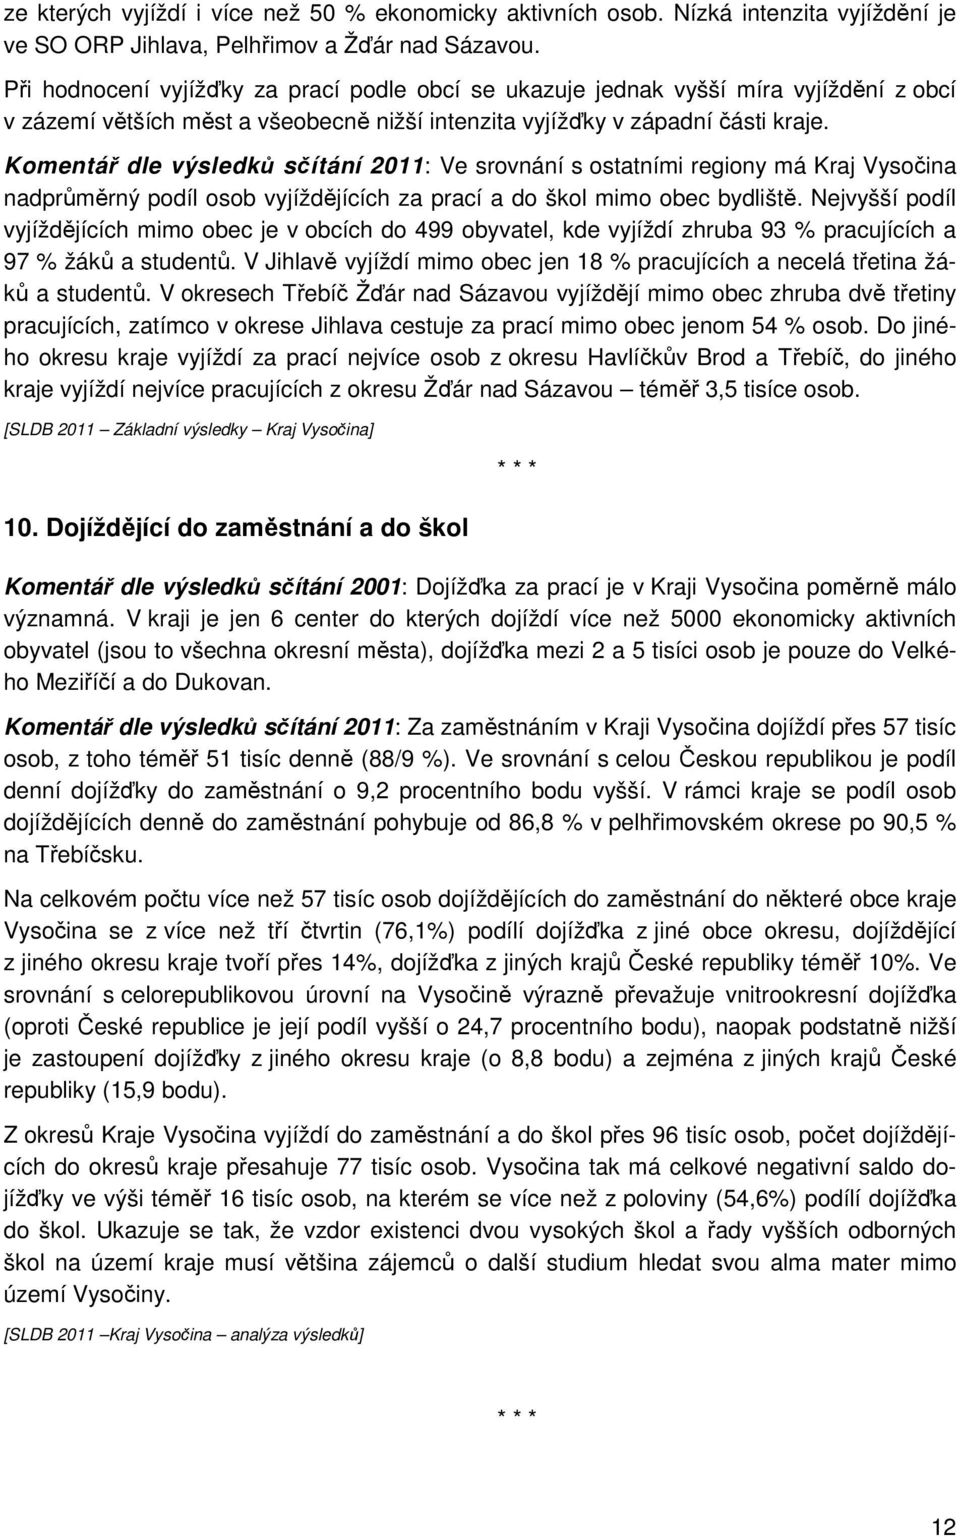 Komentář dle výsledků sčítání 2011: Ve srovnání s ostatními regiony má Kraj Vysočina nadprůměrný podíl osob vyjíždějících za prací a do škol mimo obec bydliště.